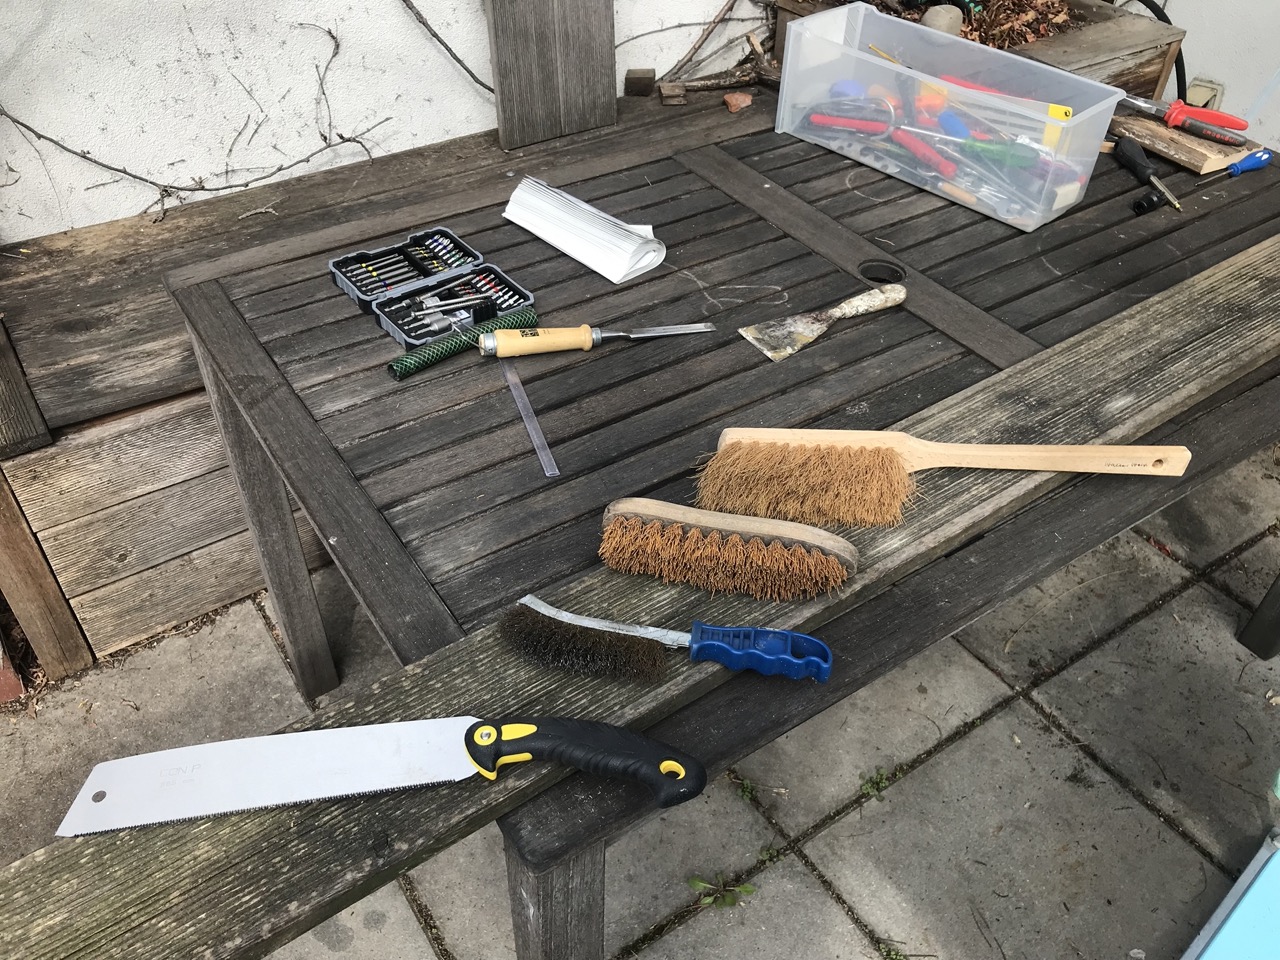 Auf einem verwitterten Brett liegen eine Japansäge, eine Drahtbürste, eine Wurzelbürste und ein Handbesen. Im Hintergrund diverses anderes Werkzeug.